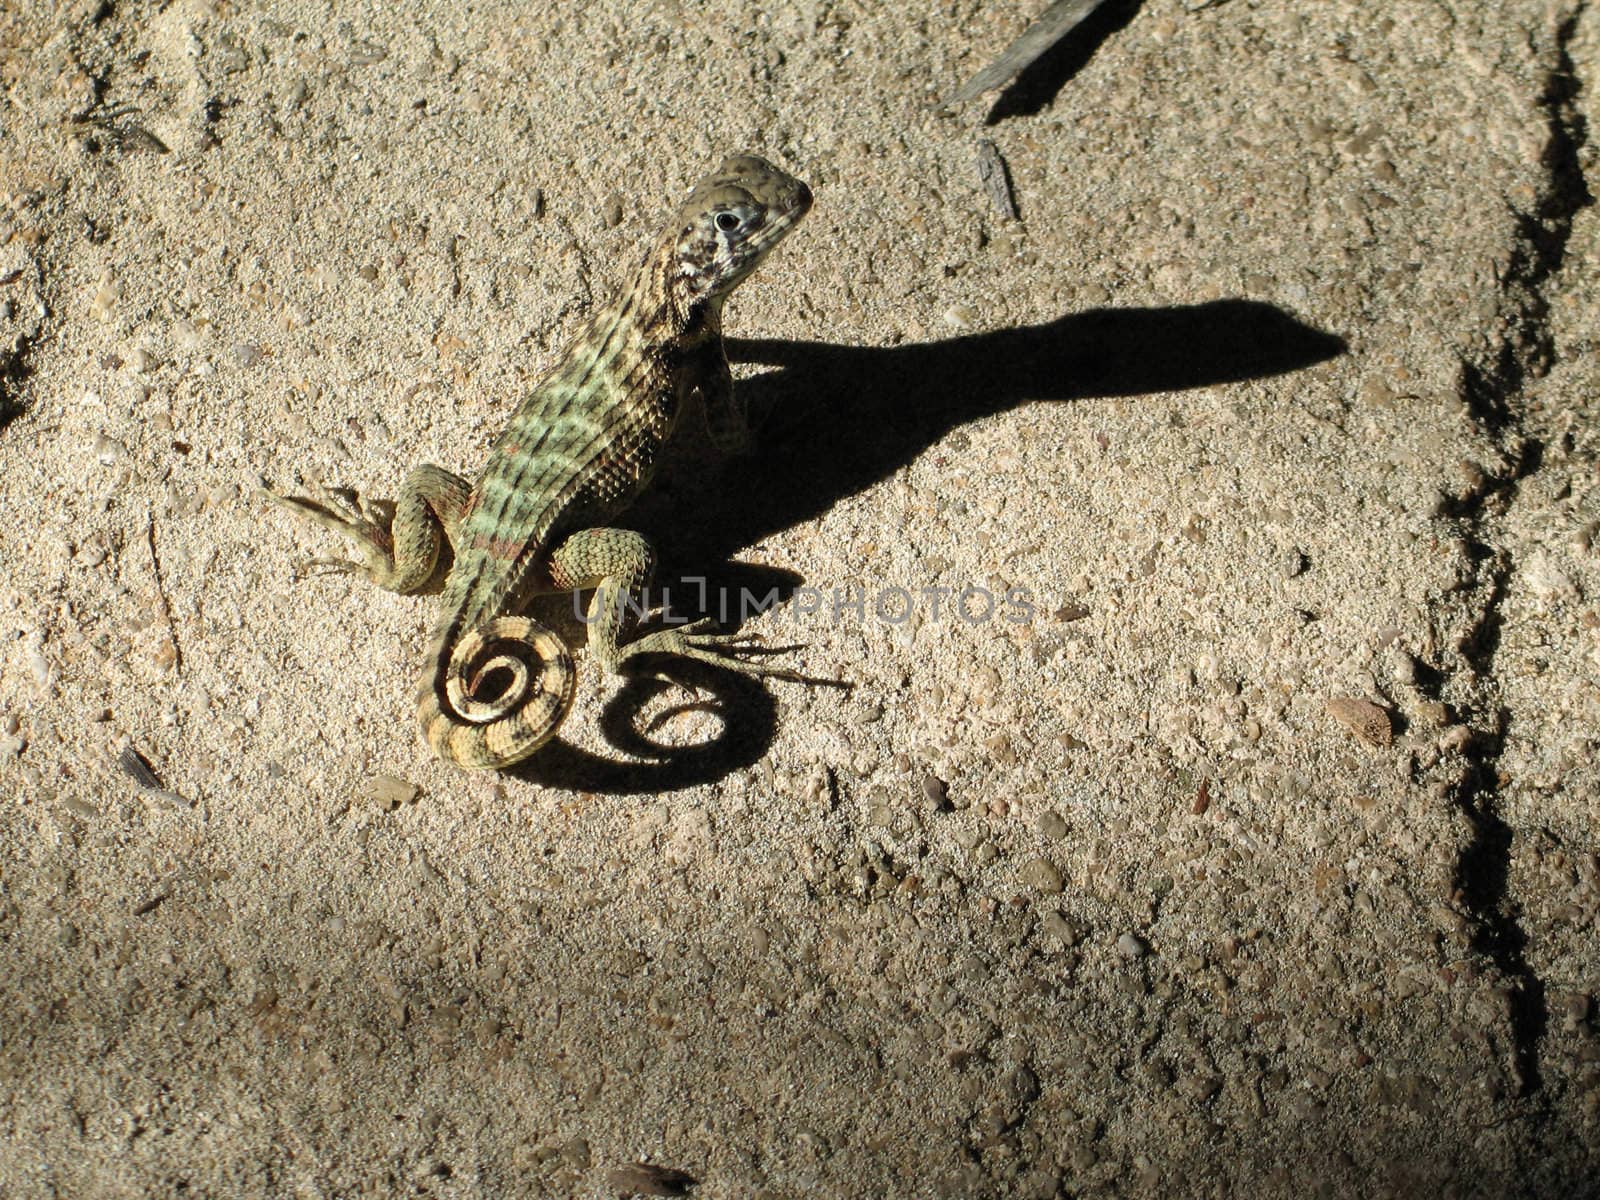 lizard on a rock by mmm